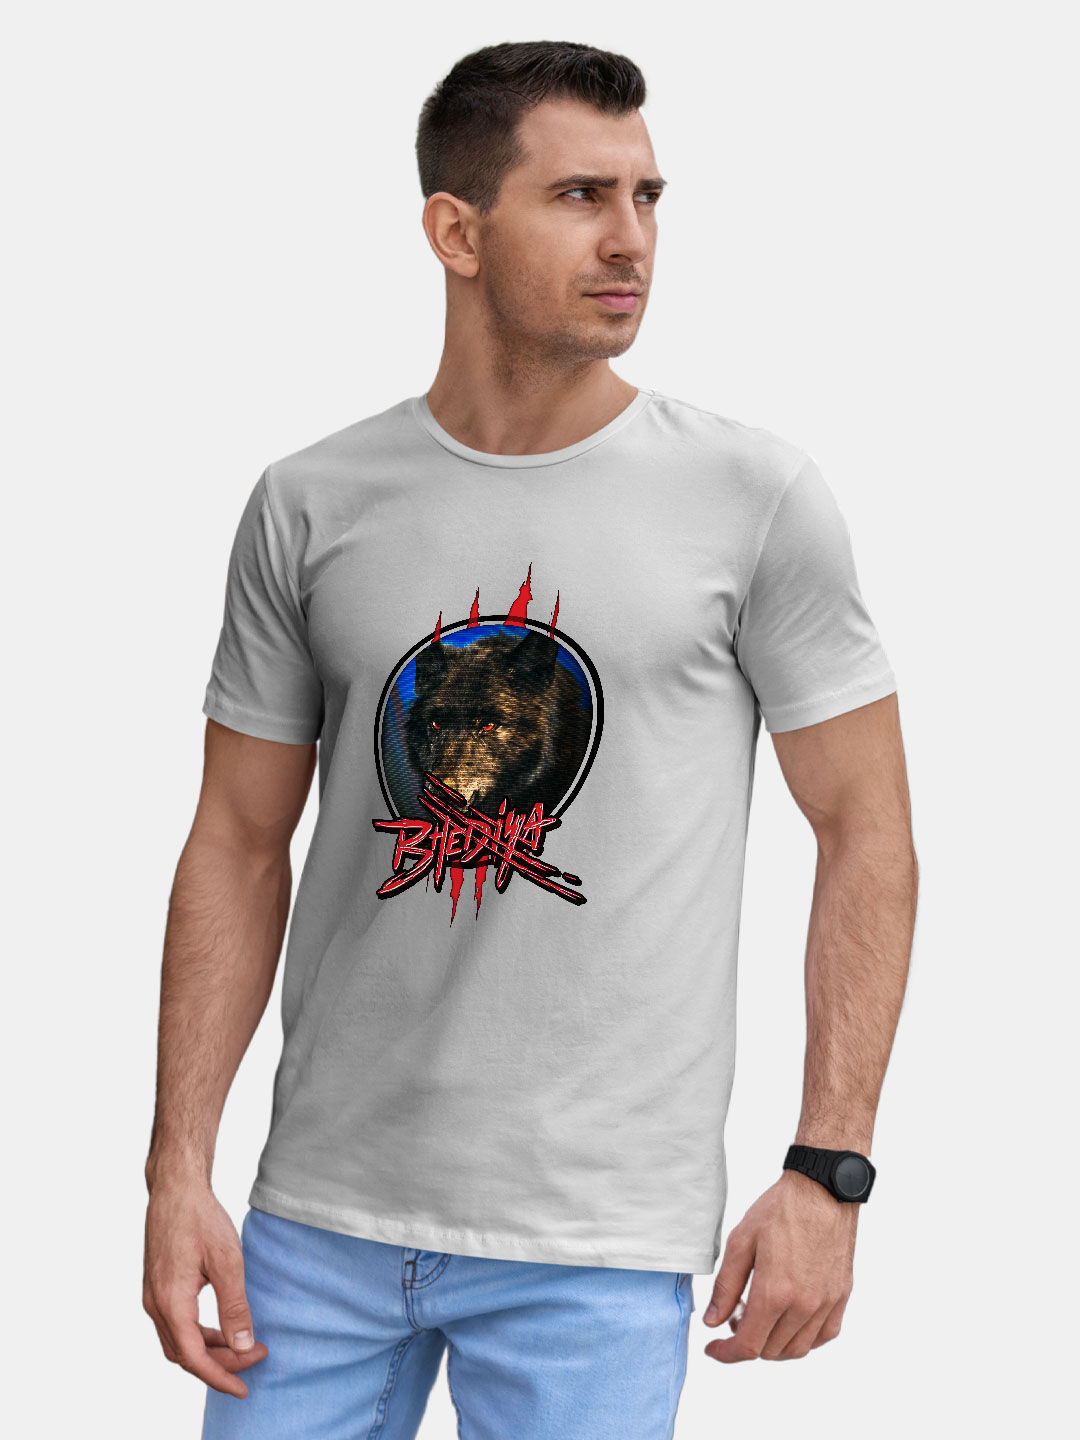 Buy Bhediya Glitch White - Male Designer T-Shirts T-Shirts Online